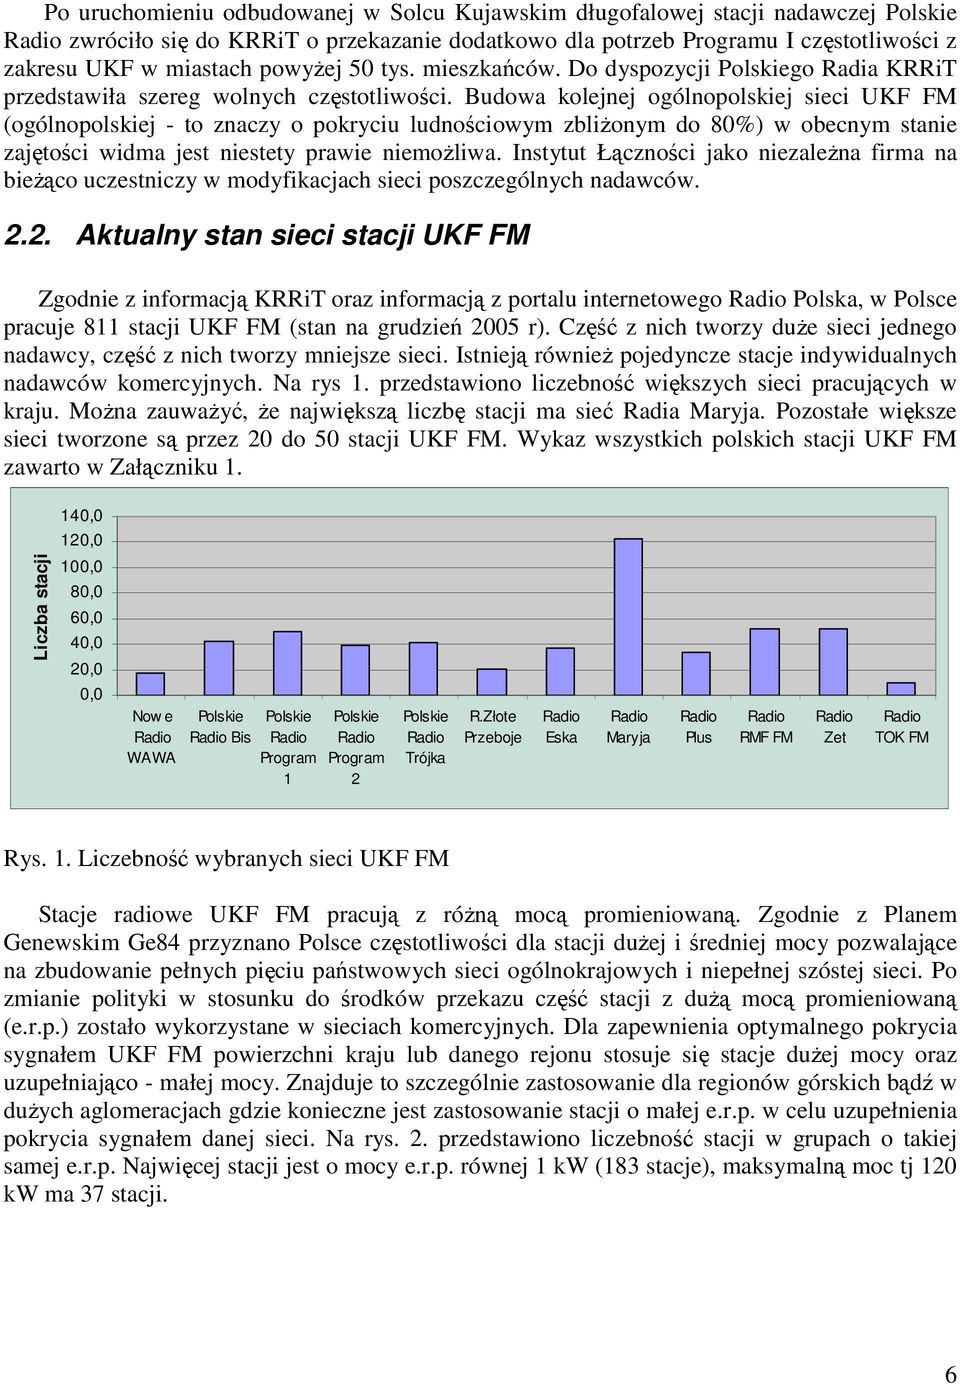 Budowa kolejnej ogólnopolskiej sieci UKF FM (ogólnopolskiej - to znaczy o pokryciu ludnościowym zbliŝonym do 80%) w obecnym stanie zajętości widma jest niestety prawie niemoŝliwa.